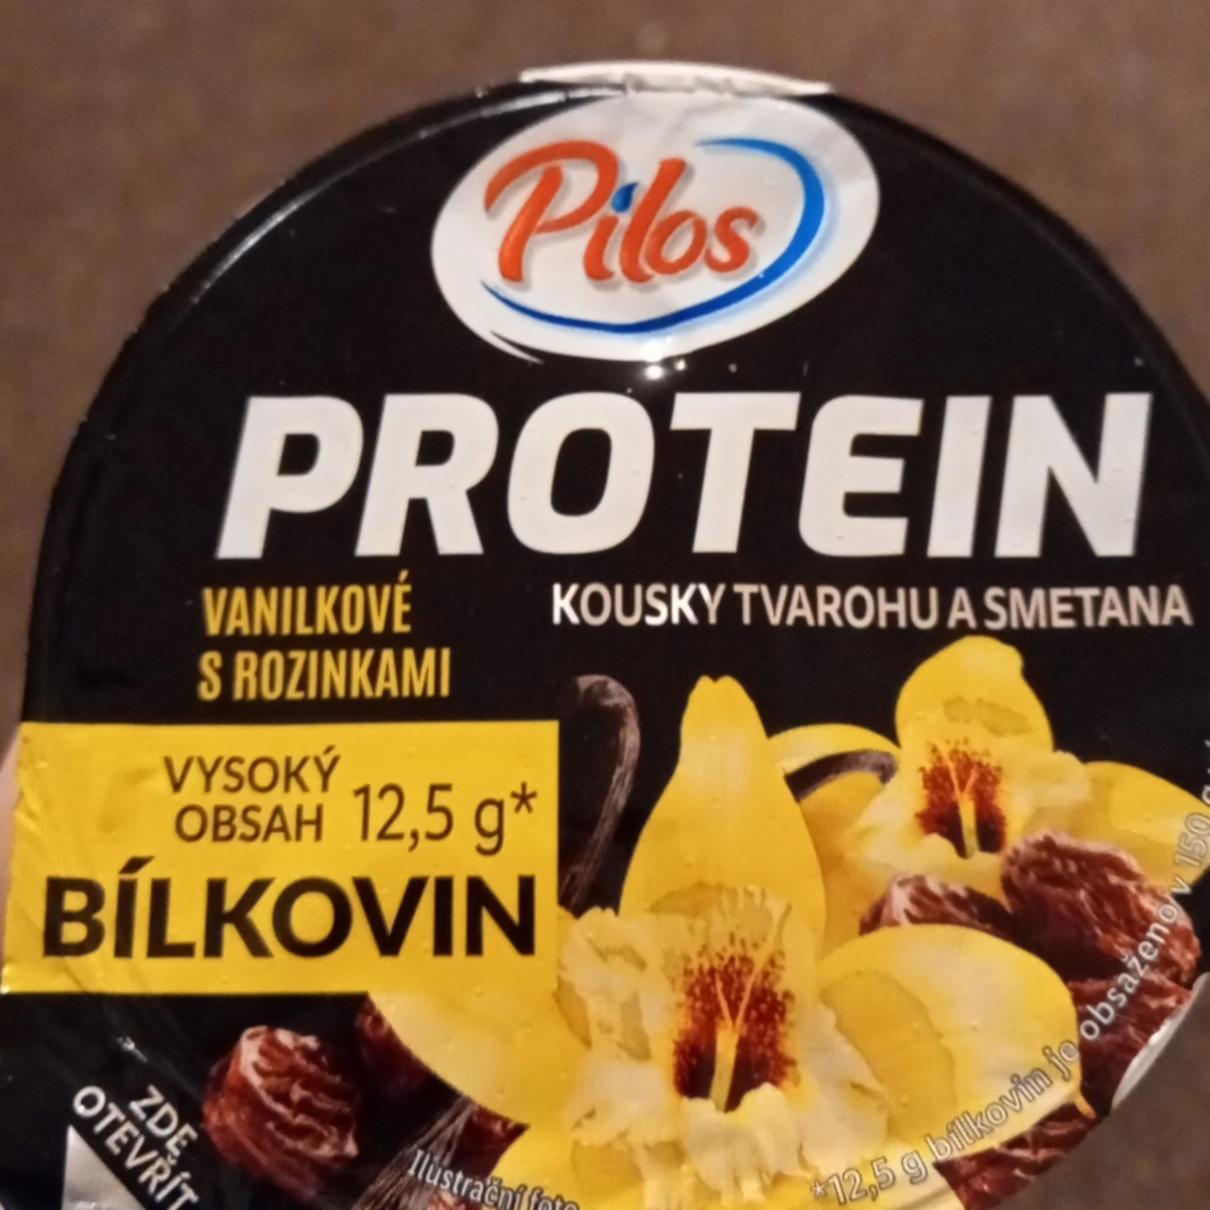 Fotografie - Protein Kúsky tvarohu a smotana Vanilkové s hrozienkami Pilos